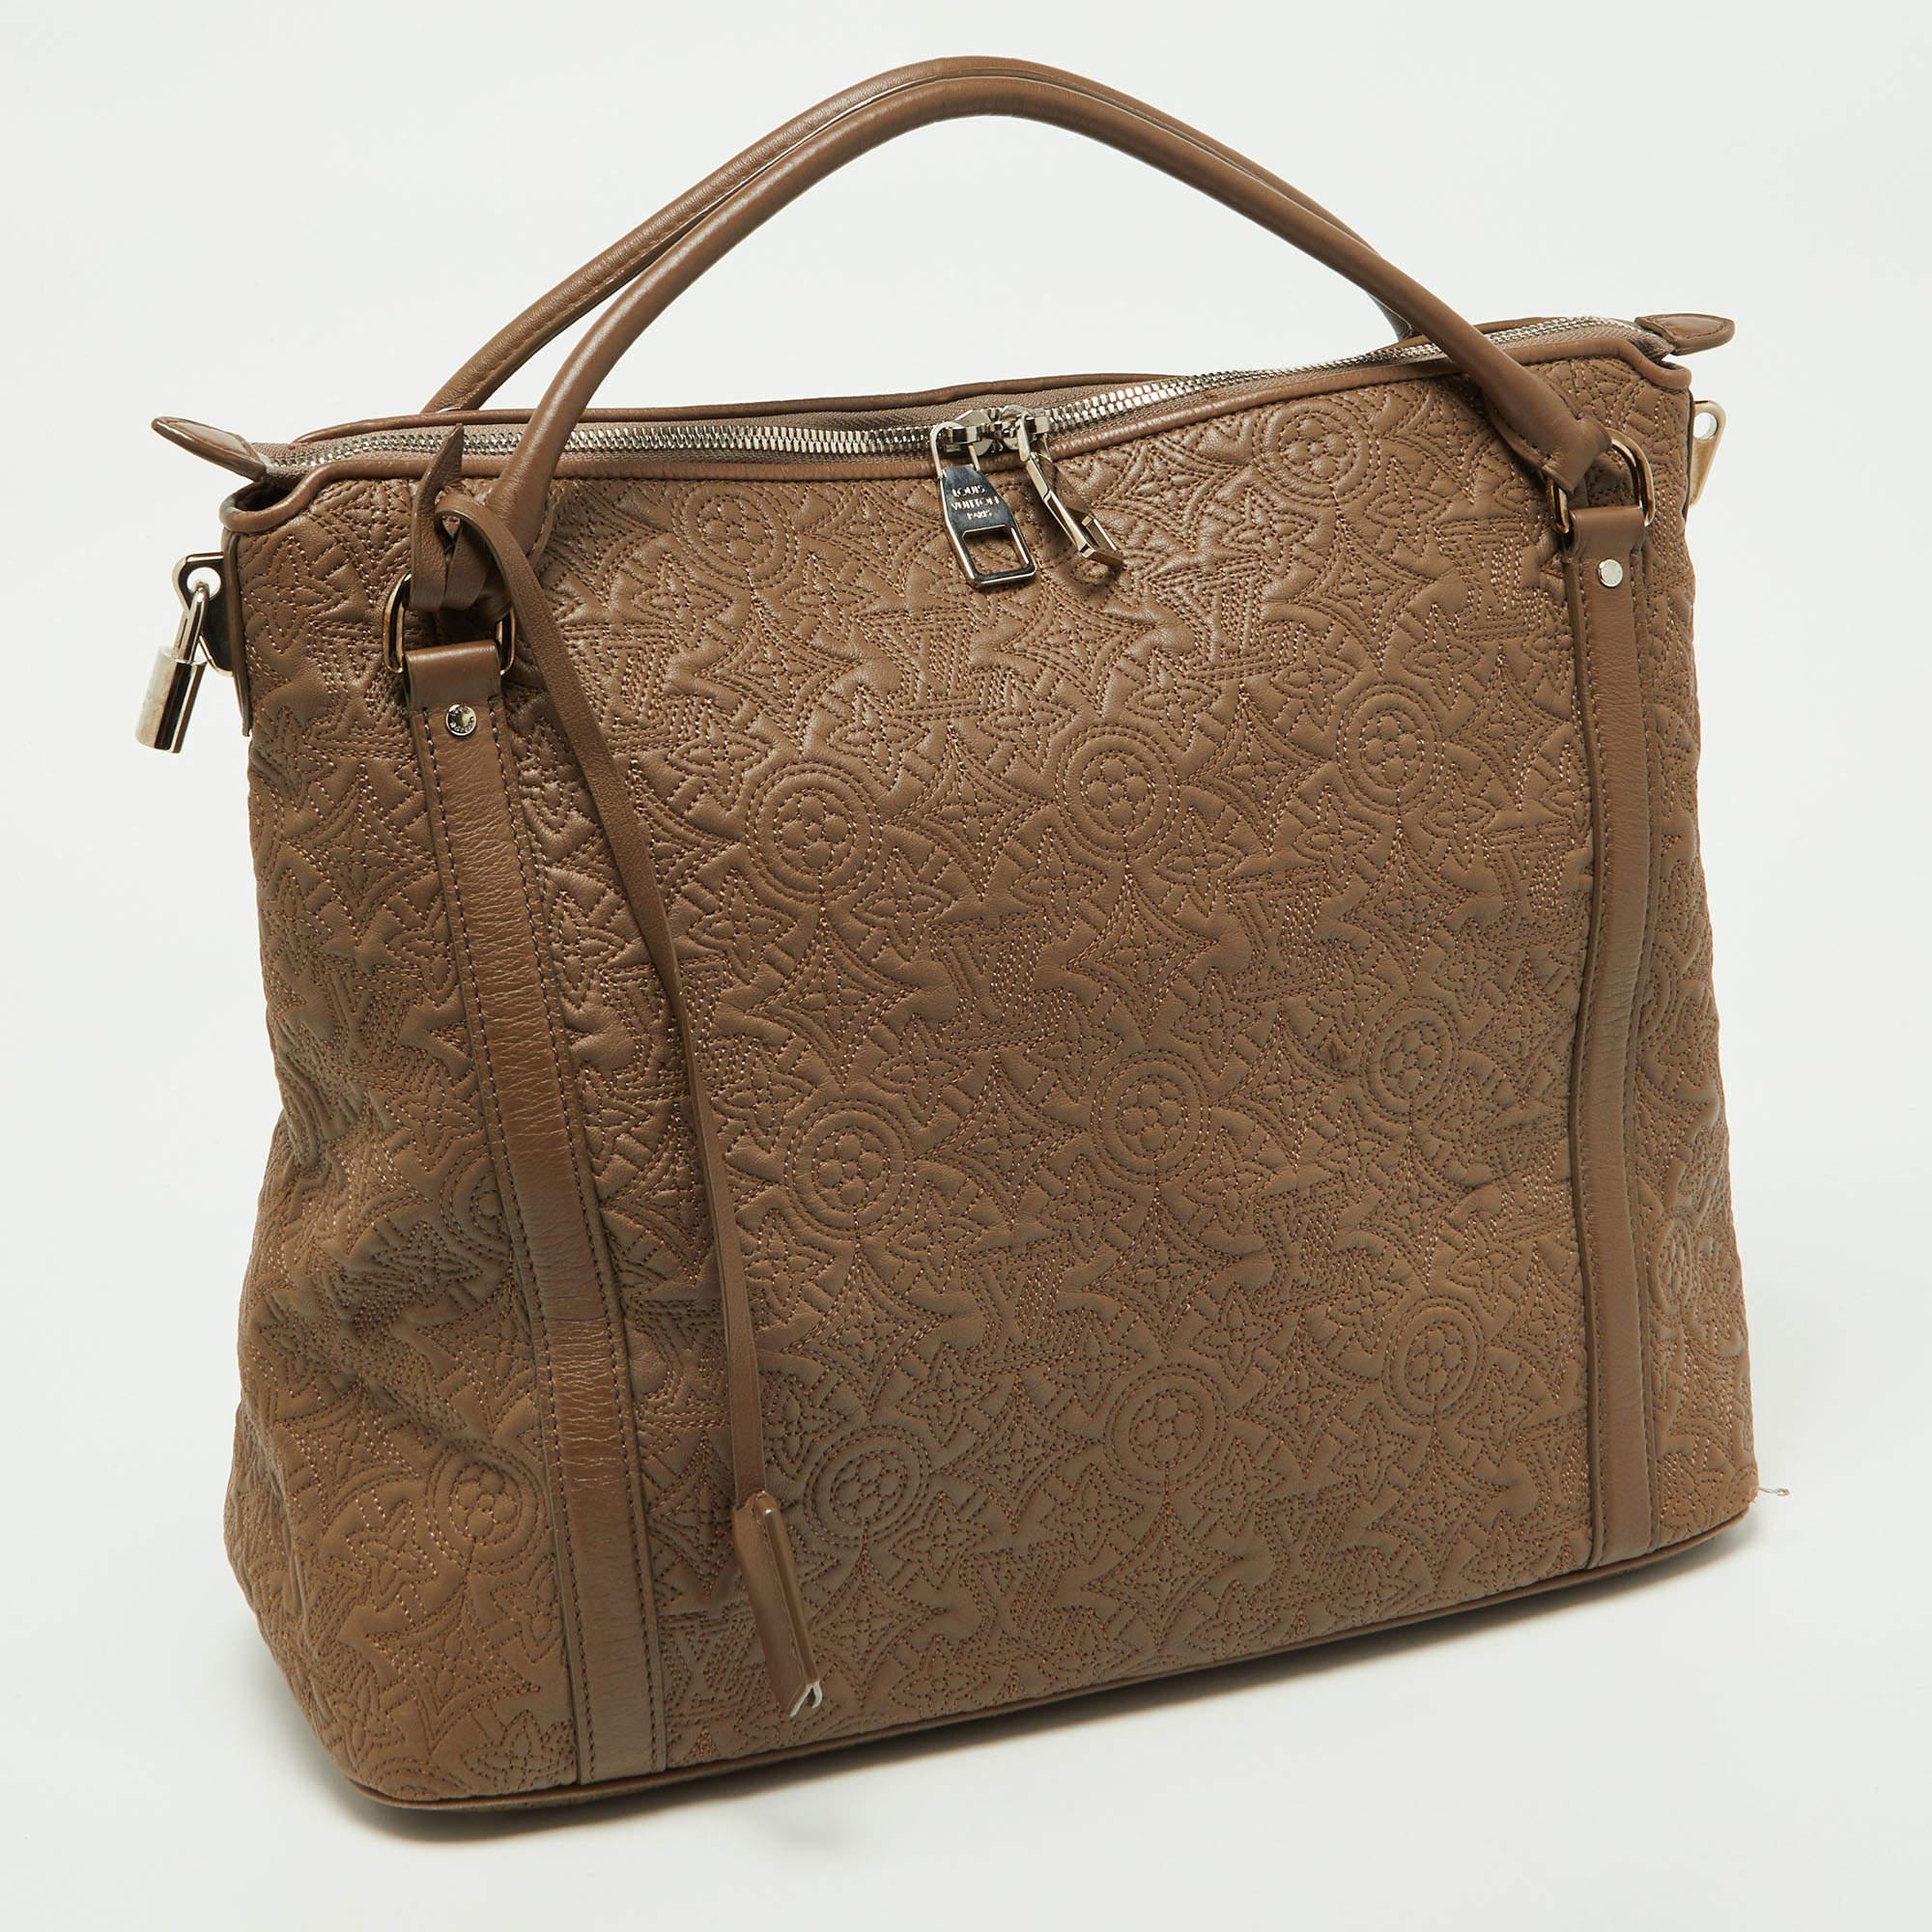 Le sac Ixia MM de Louis Vuitton est réalisé en cuir luxueux Antheia. Le sac présente le Monogramme de la marque, deux anses et une fermeture à double zip.

